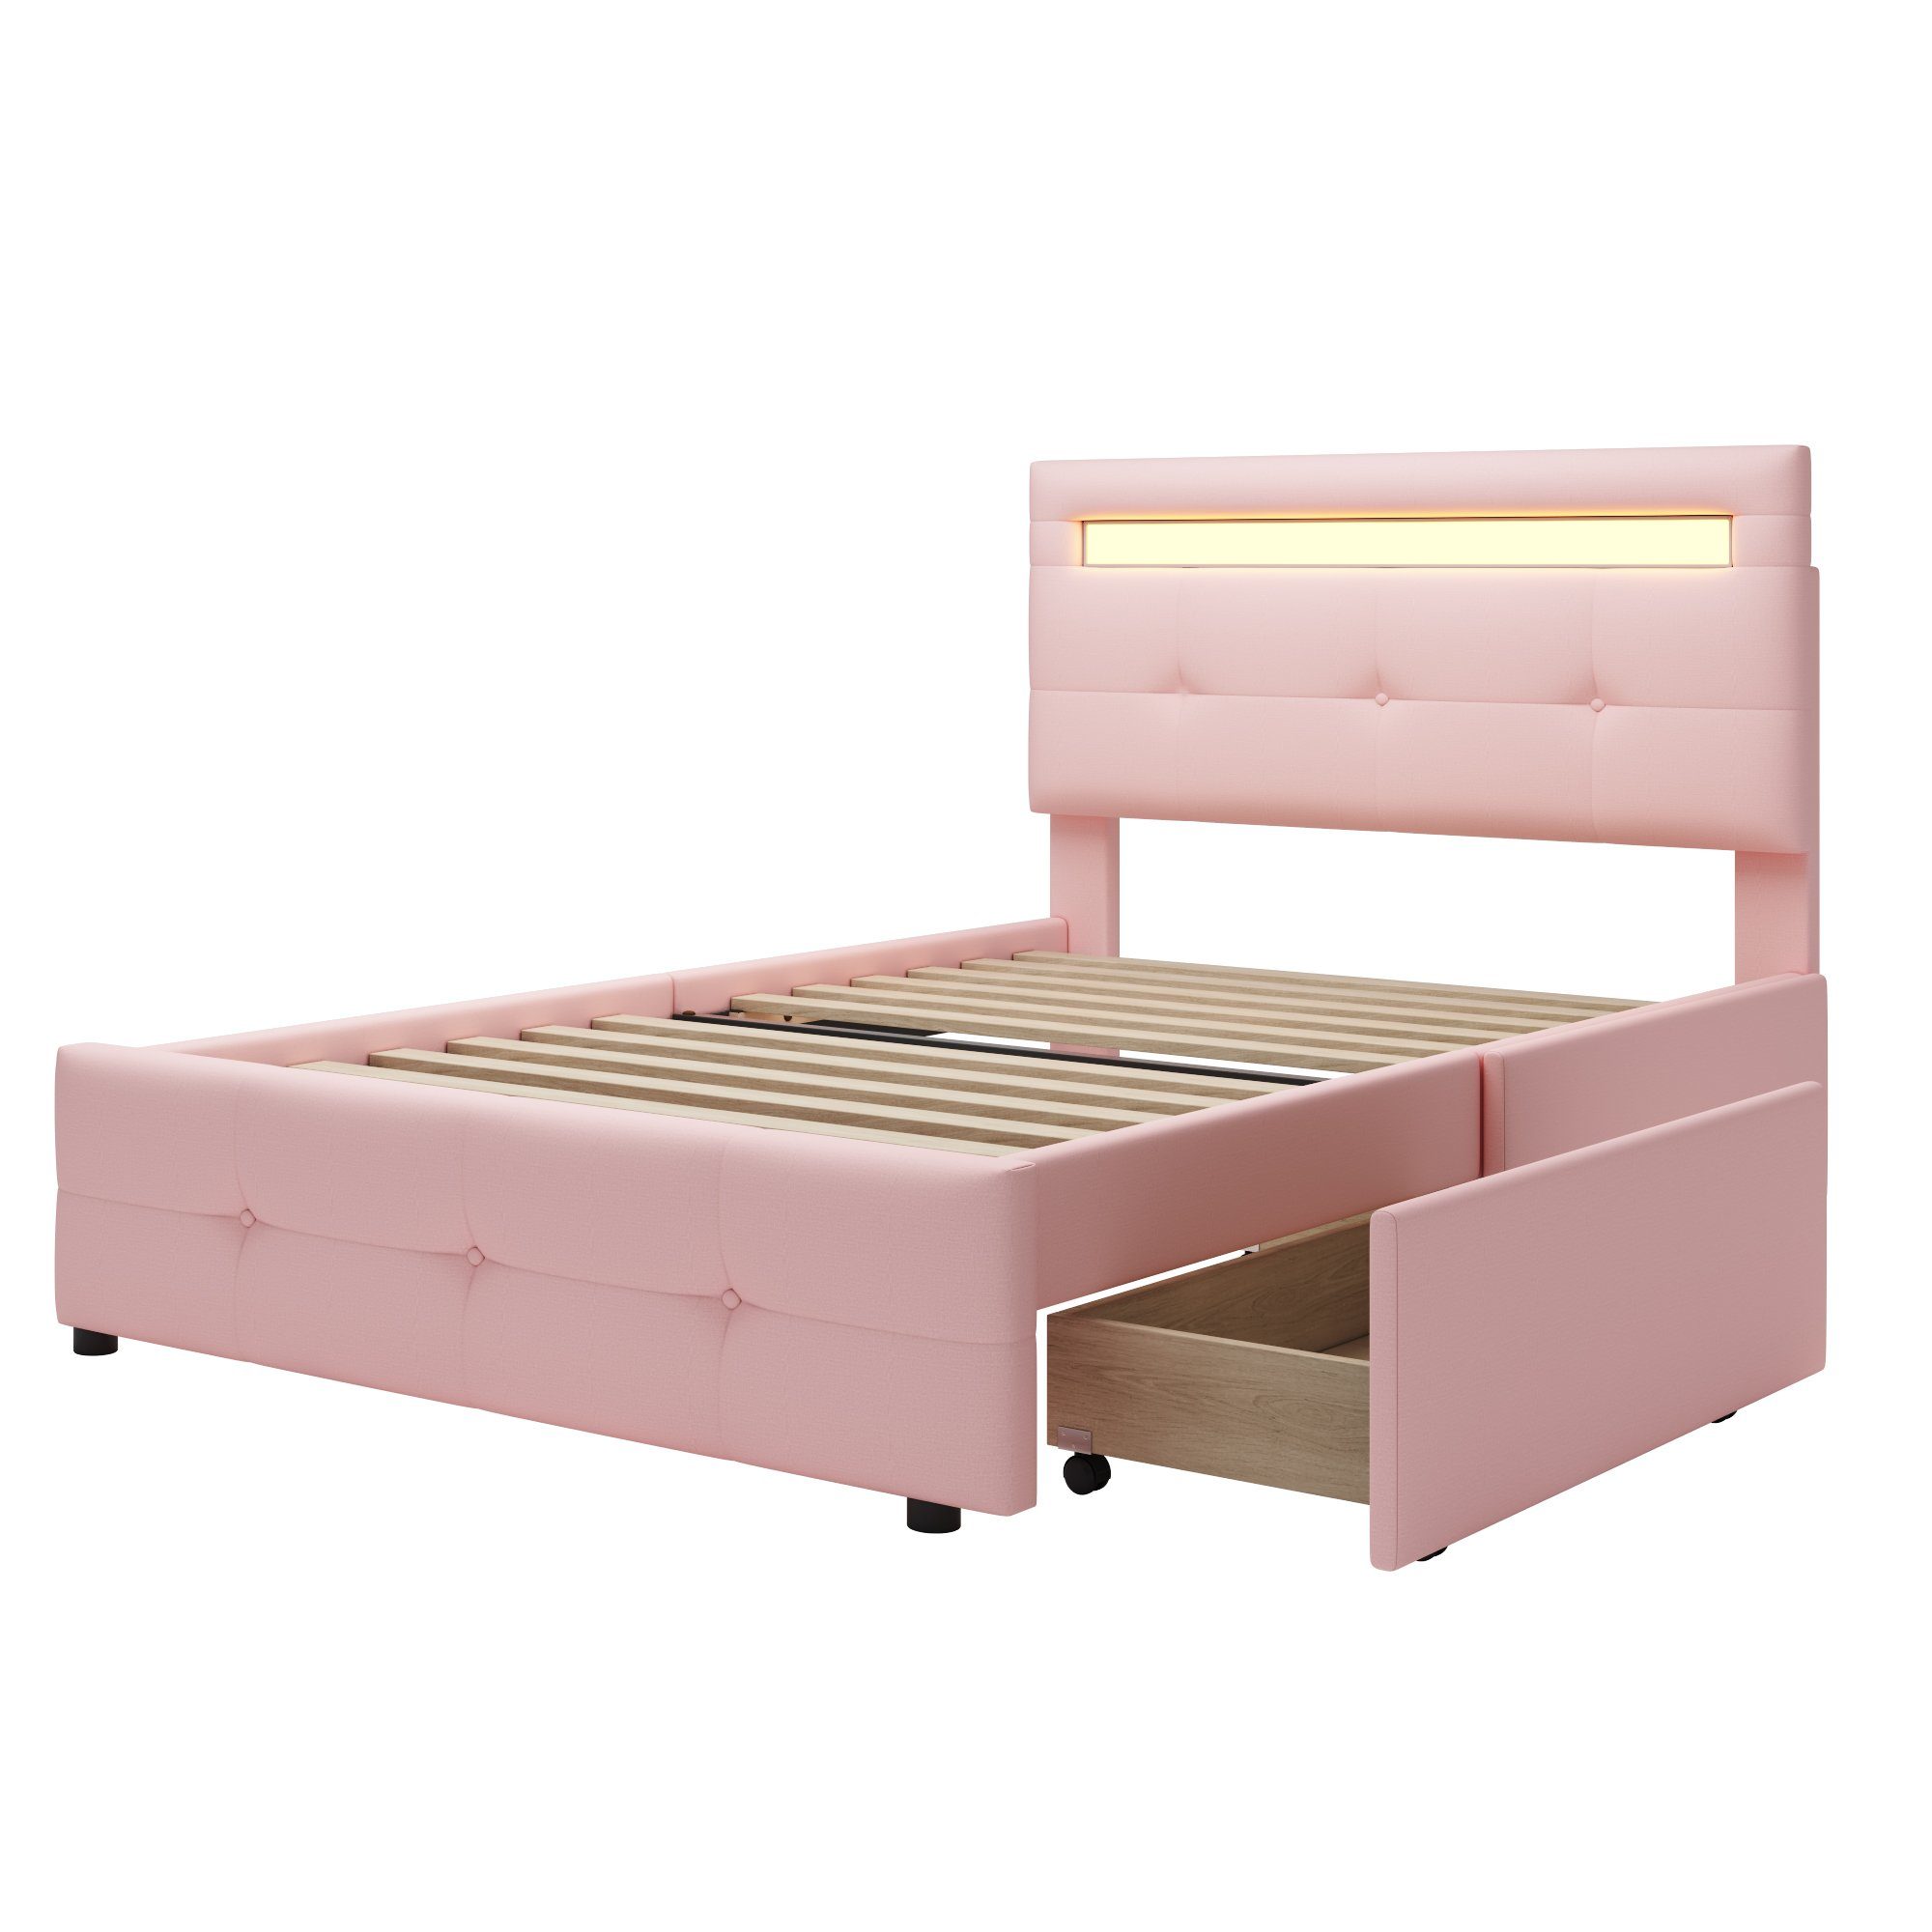 OKWISH Bett Kinderbett Jugendbett rosa (mit hautfreundlicher Matratze Gästebett 200x90cm, flach), LED-Leuchten, Polsterbett Leinenpolsterung 2 Schubladen, Ohne